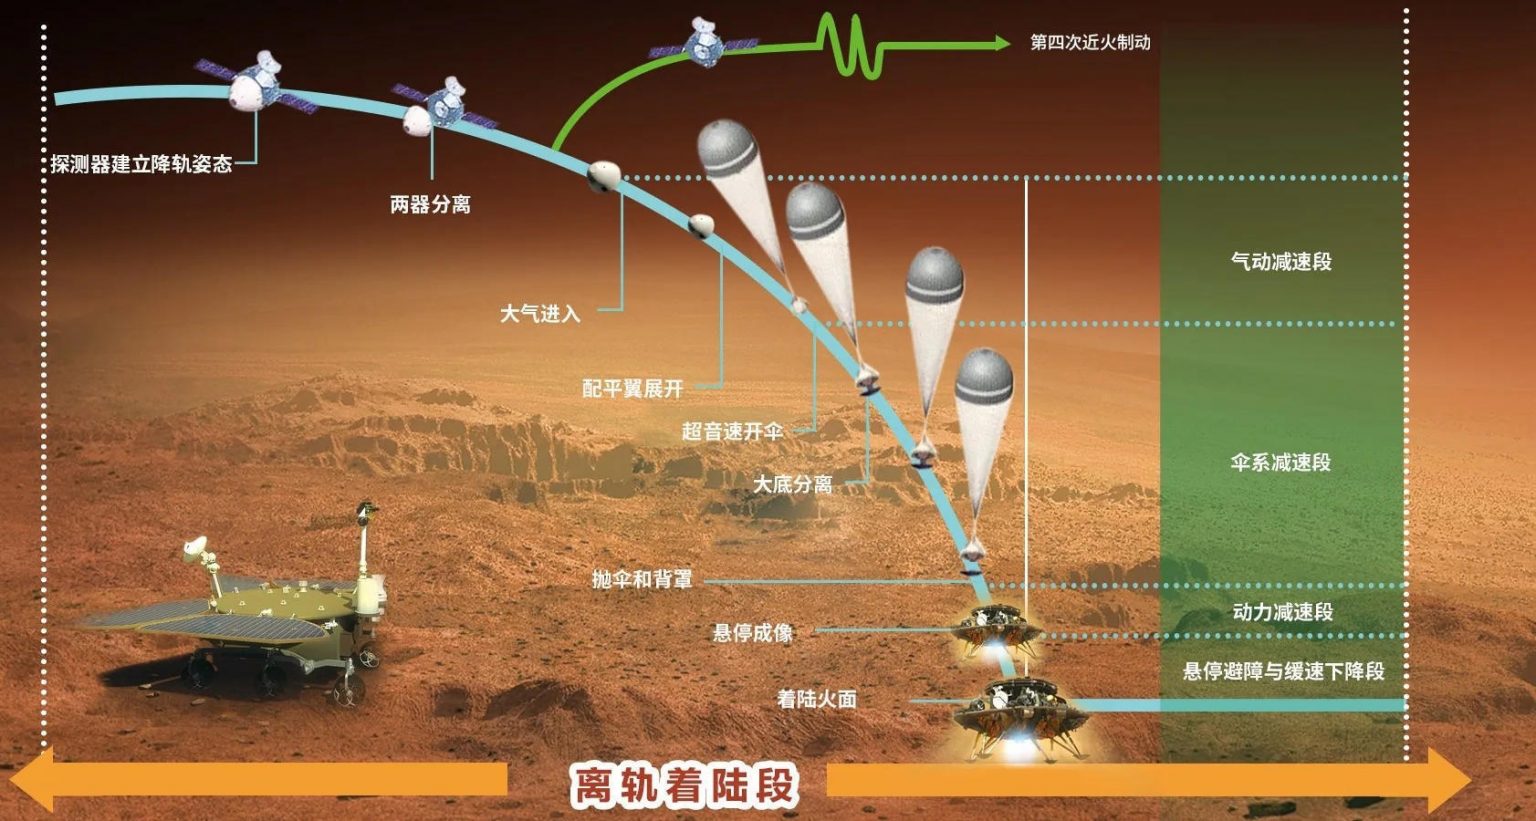 Китайский аппарат на Марсе